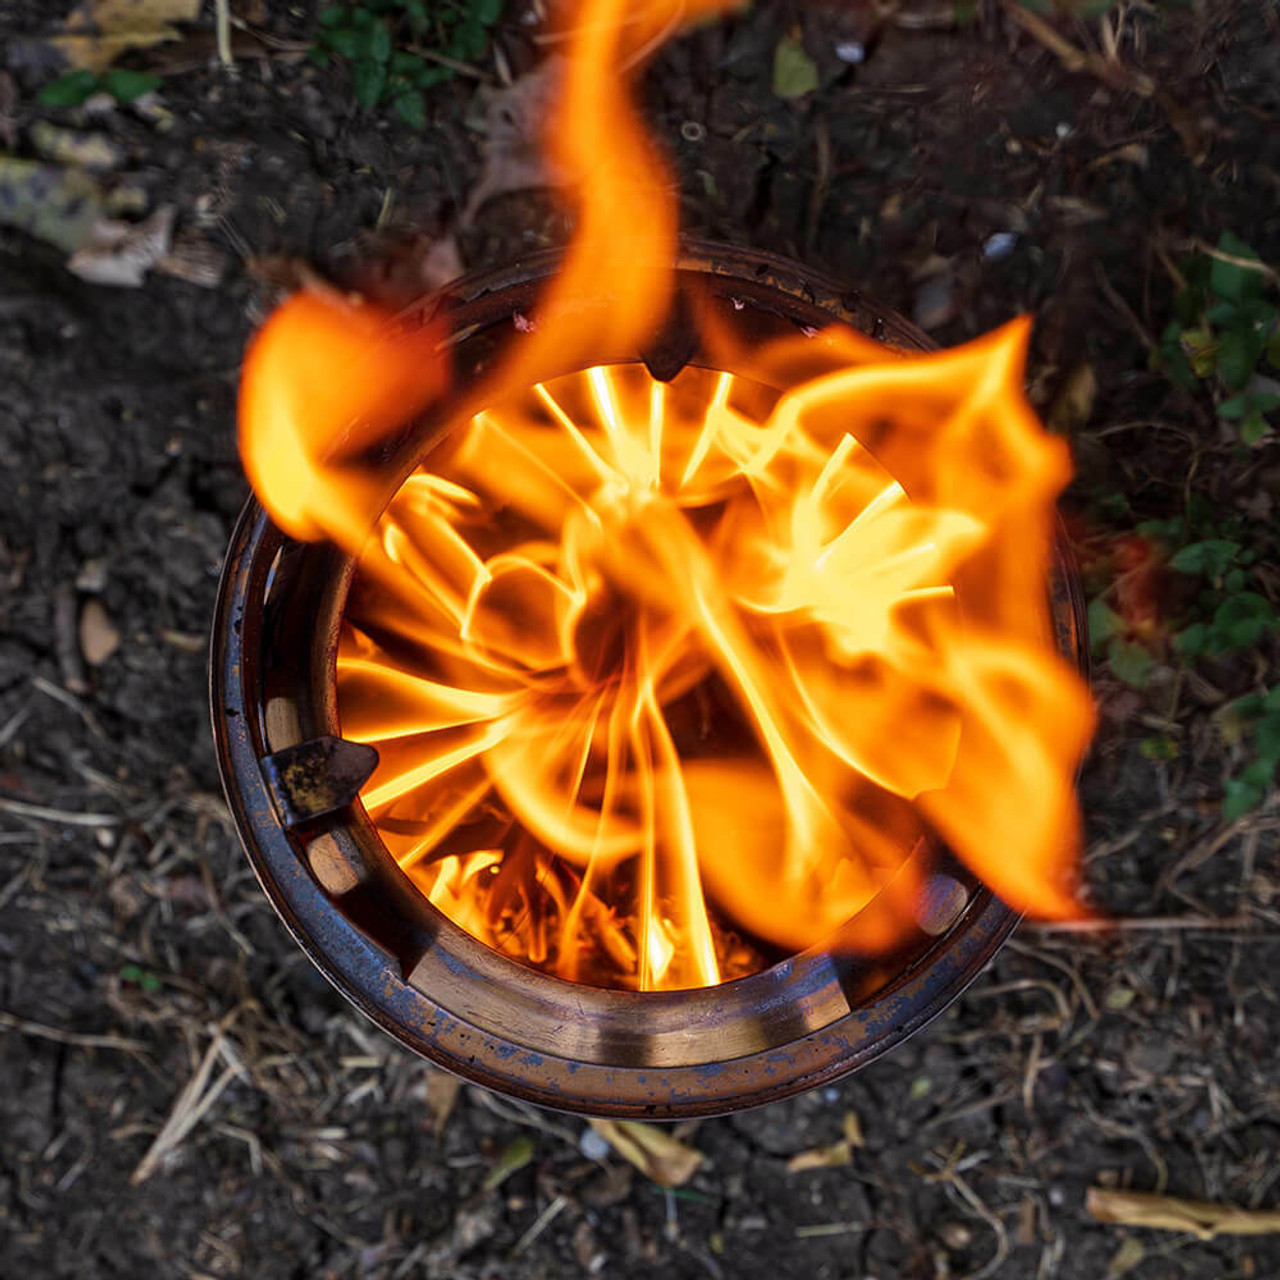 Campfire - Solo Stove